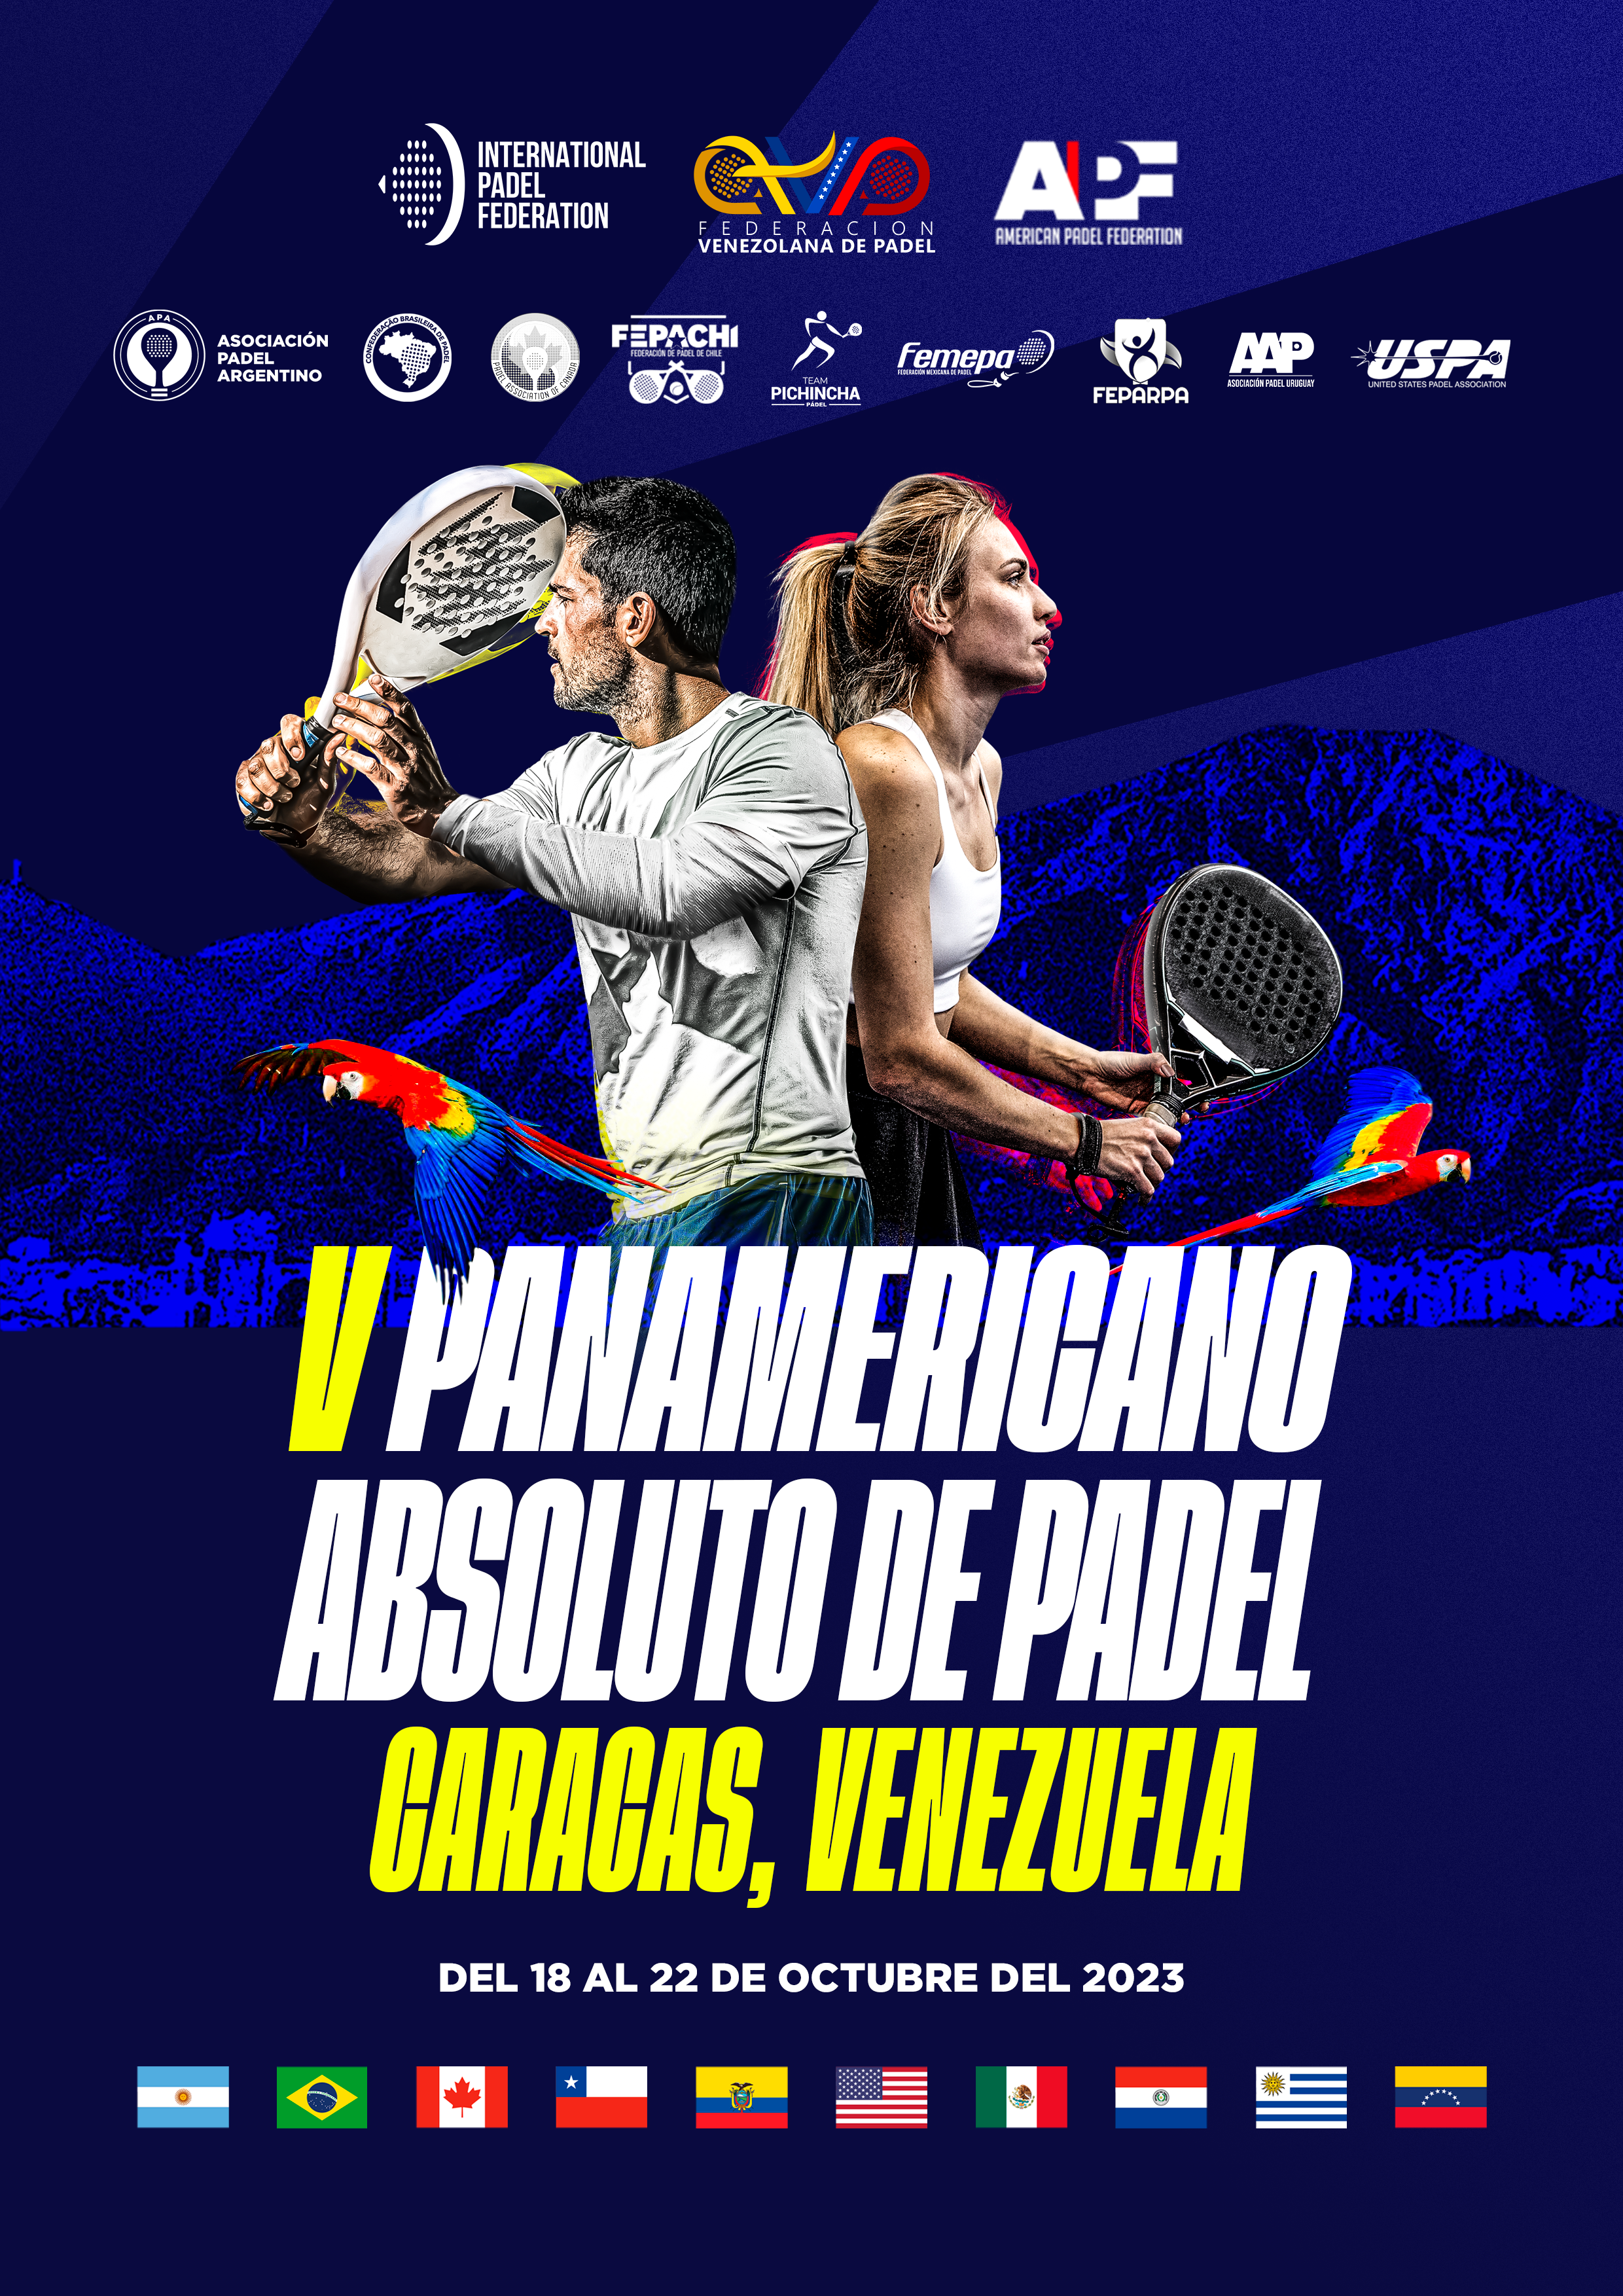 Venezuela será la sede del V Panamericano Absoluto de Pádel APF 2023